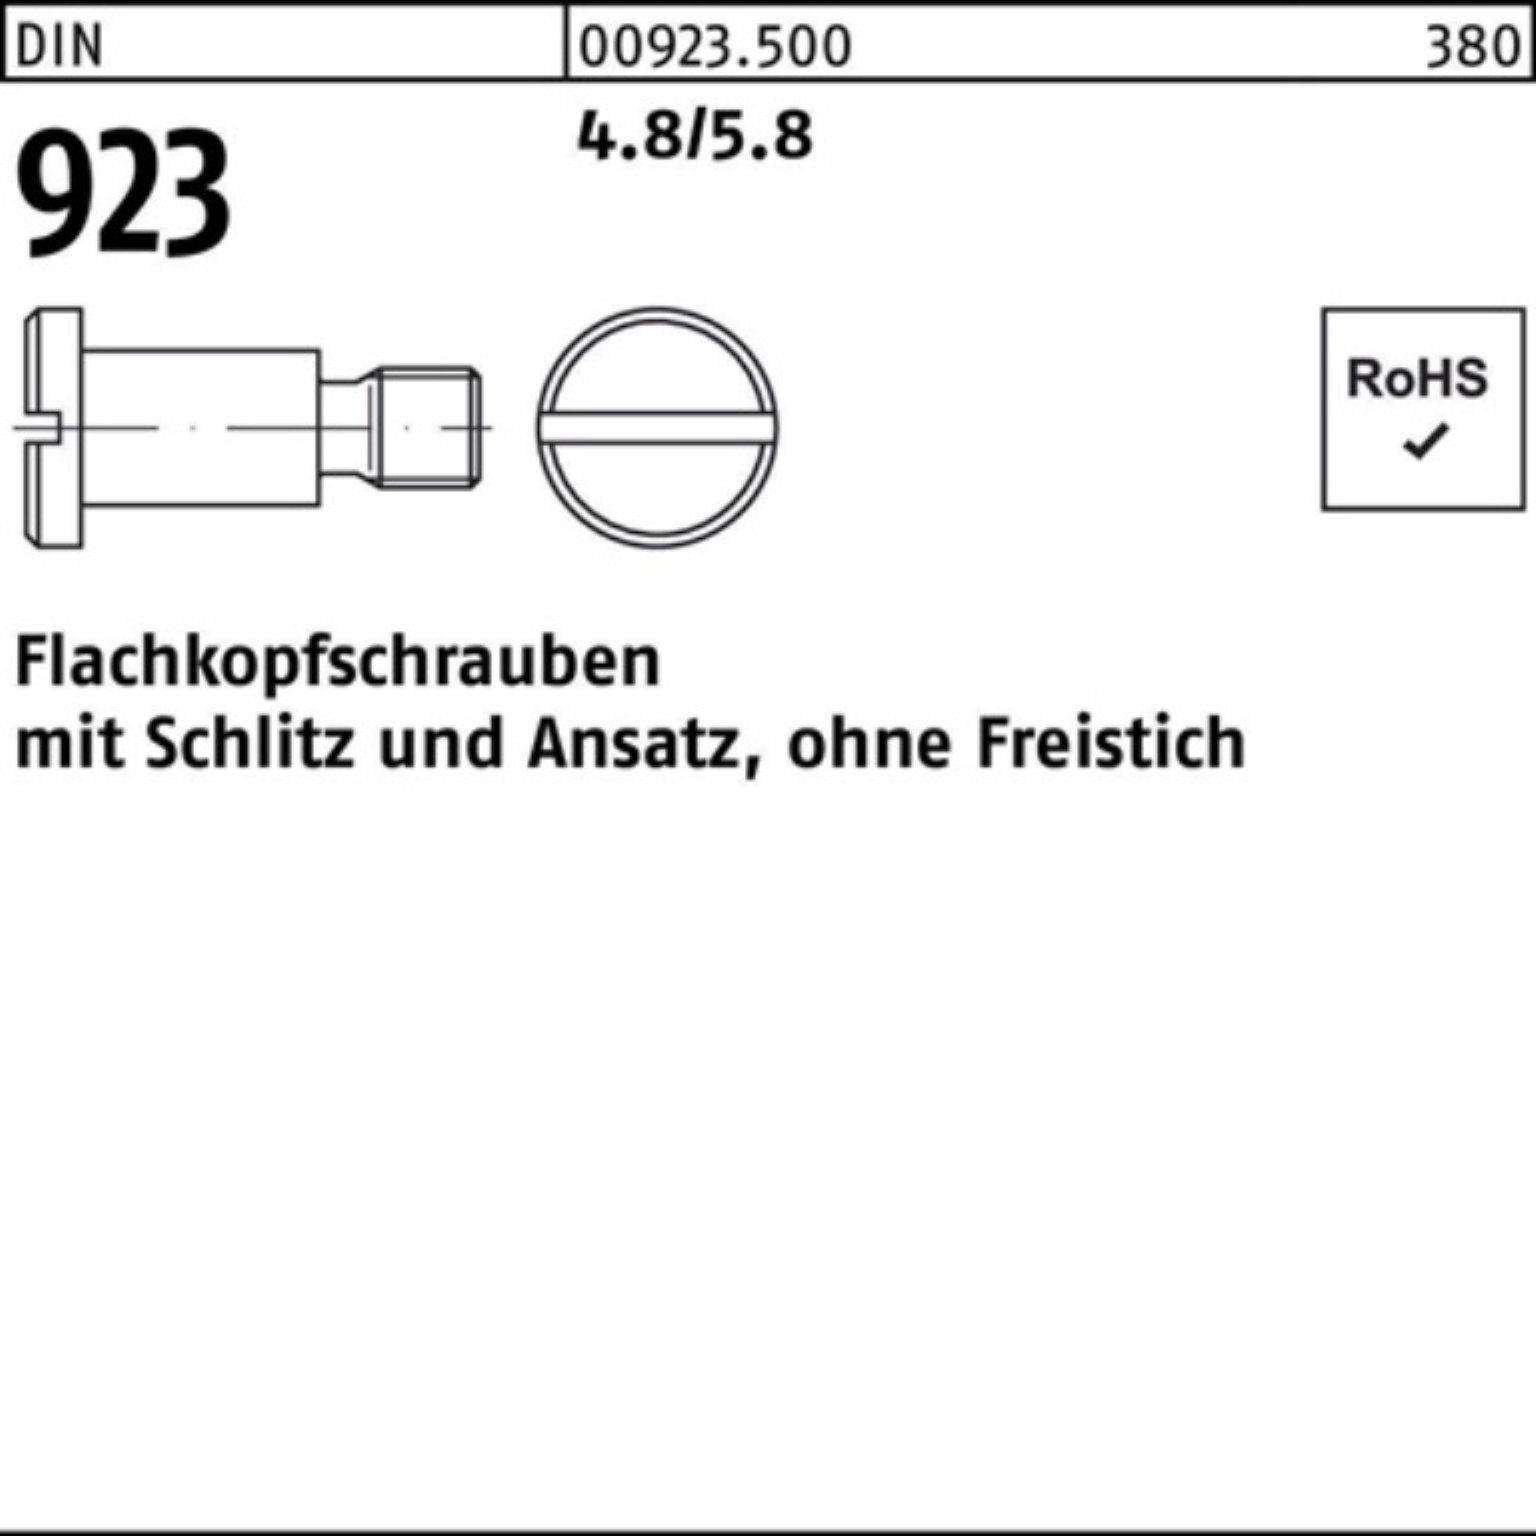 Schlitz/Ansatz Flachkopfschraube 6,0 8x Schraube 4.8/5.8 923 Reyher M4x Pack DIN 100er